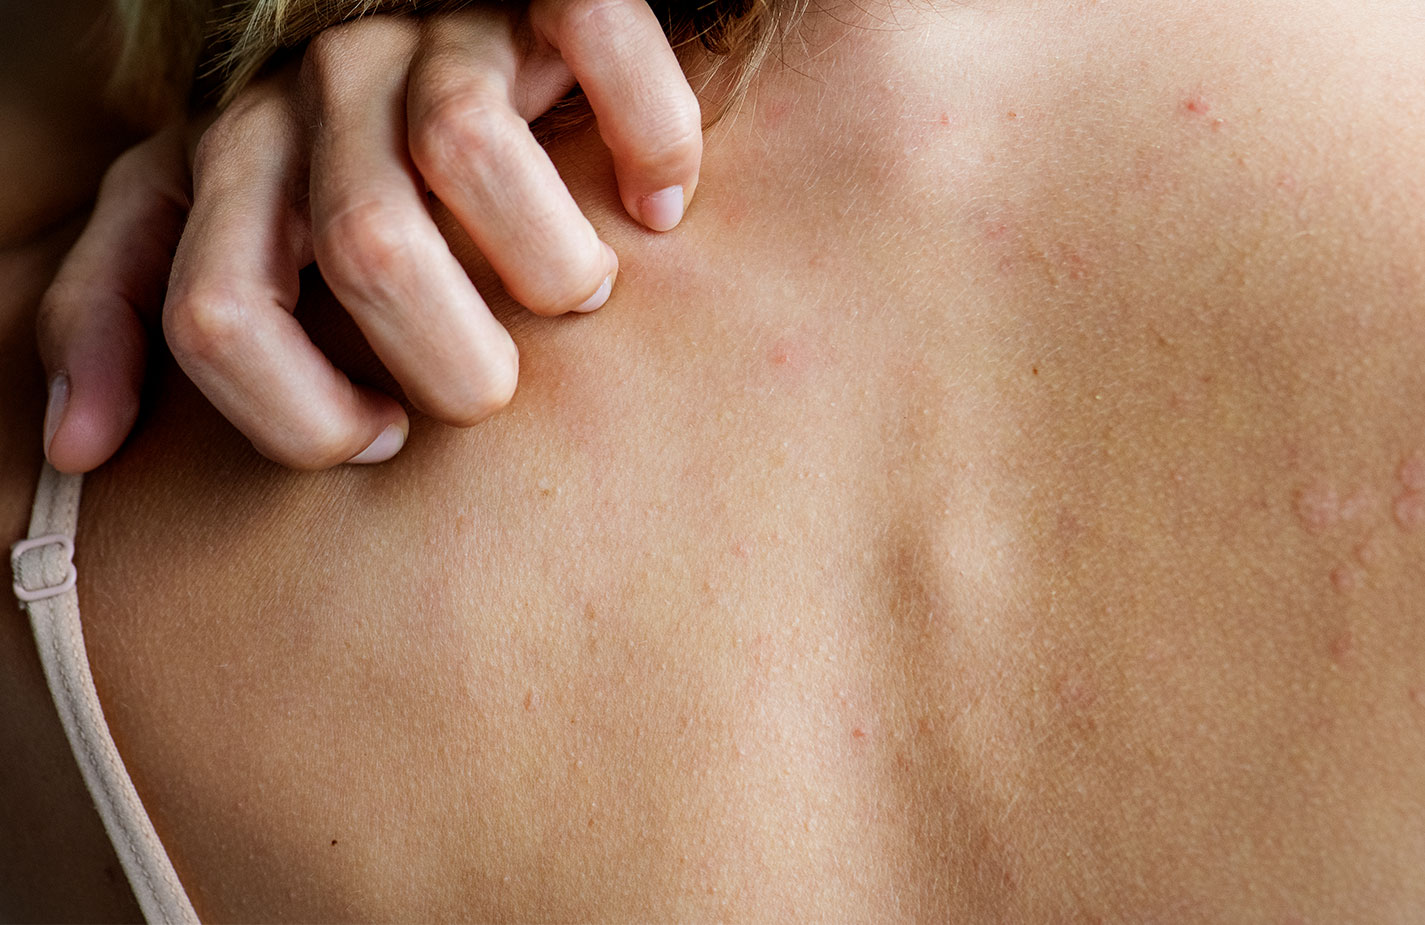 Doenças de pele: diga não ao preconceito